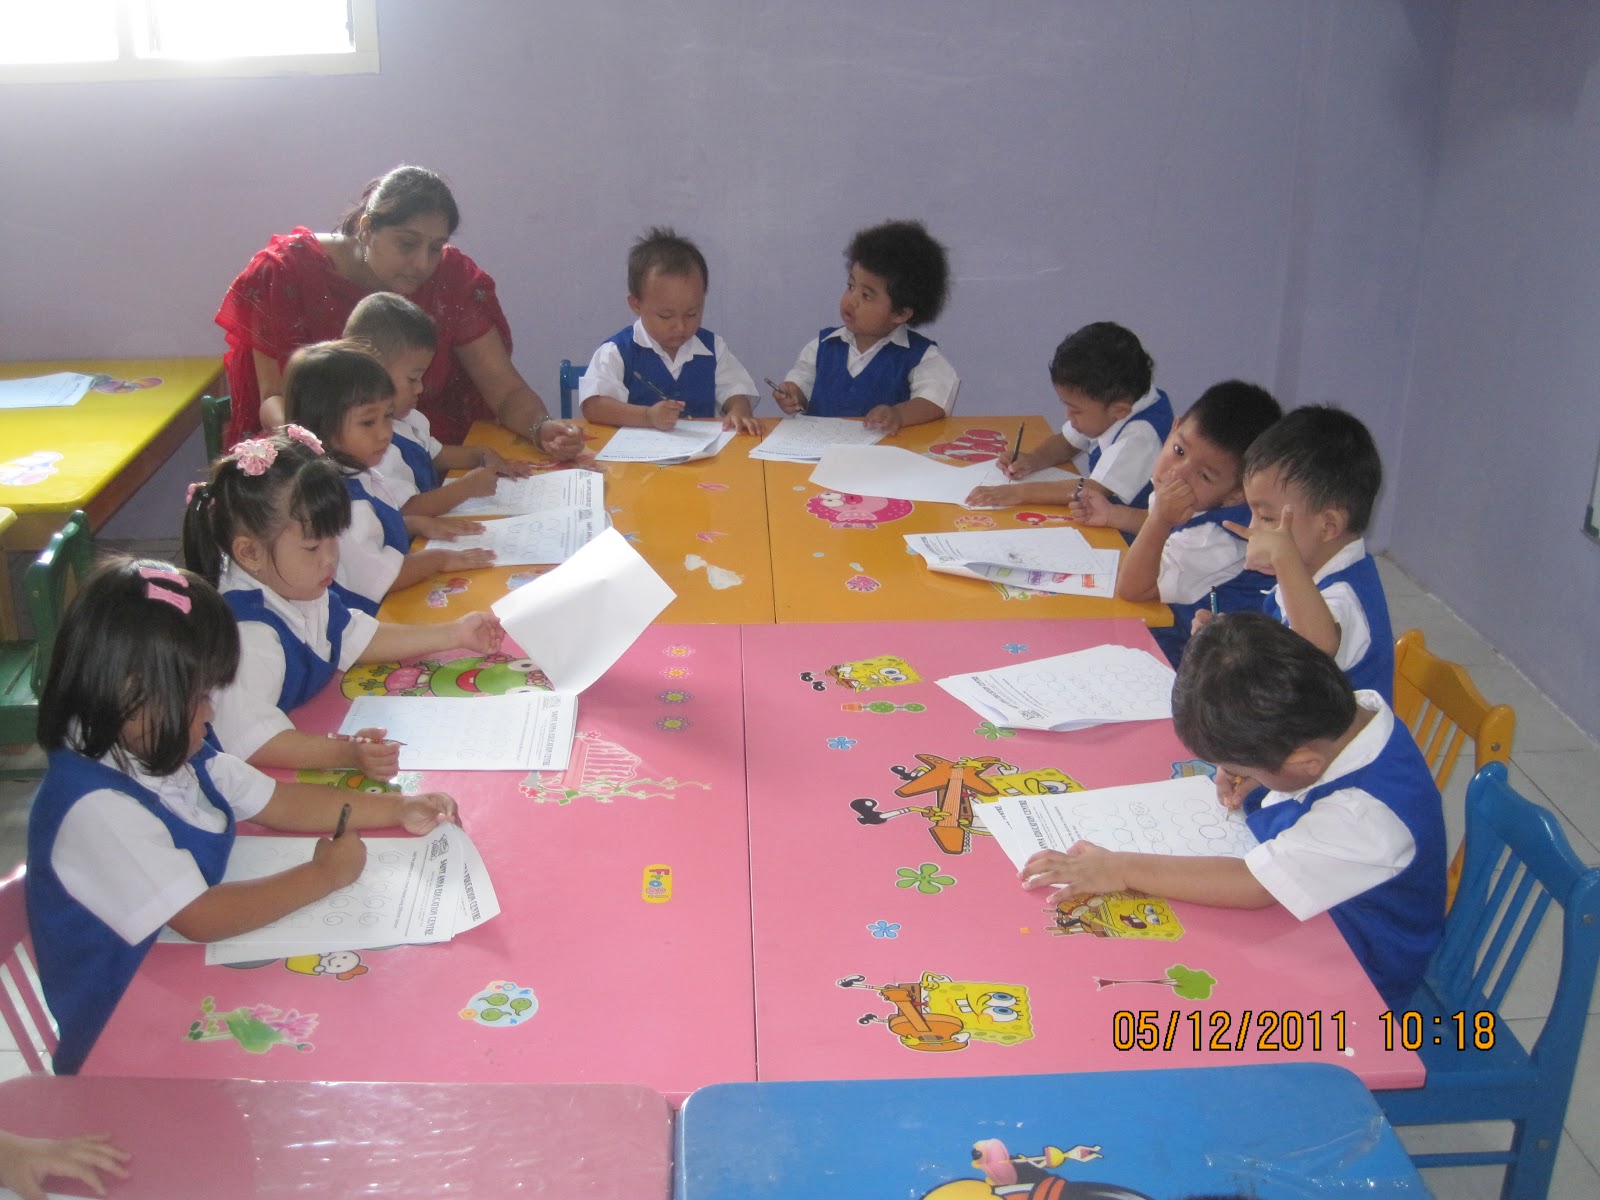 Anak anak mulai belajar berkomunikasi dalam bahasa Inggris dan Mandarin serta belajar bersosialisasi